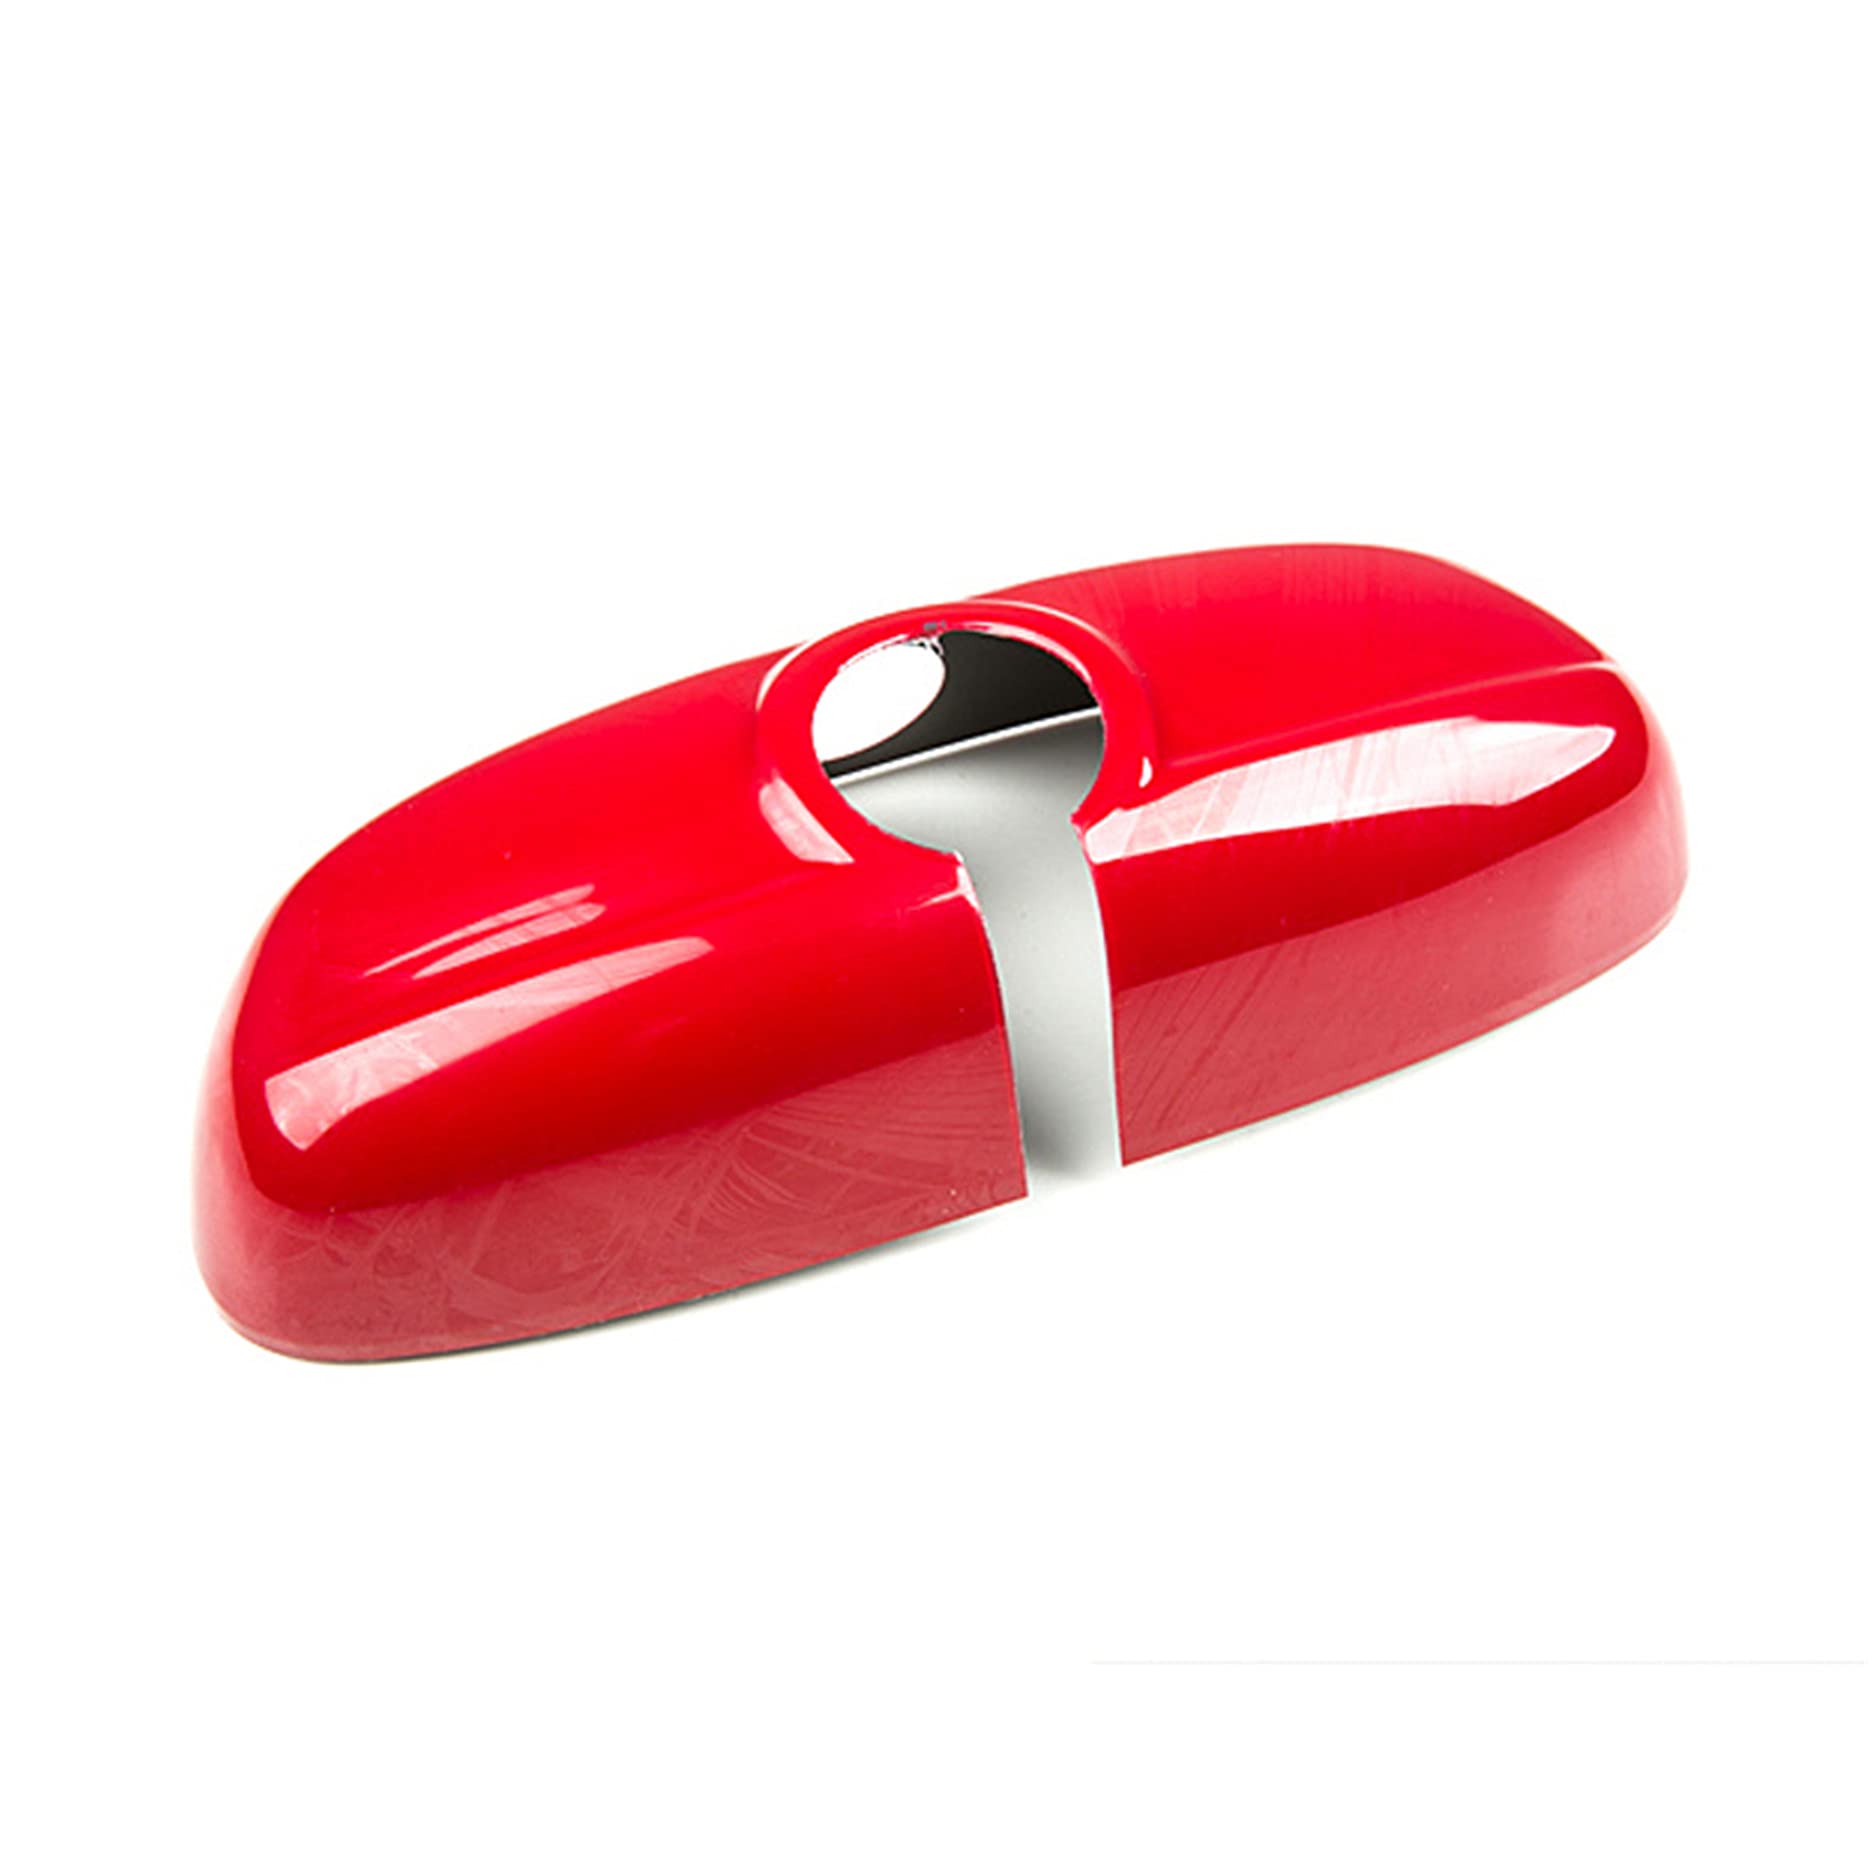 Innenrückspiegel-Abdeckung, Schutzkappe, kompatibel mit Mini Cooper (F-Serie ohne Sensorloch, rote Farbe) von RRX